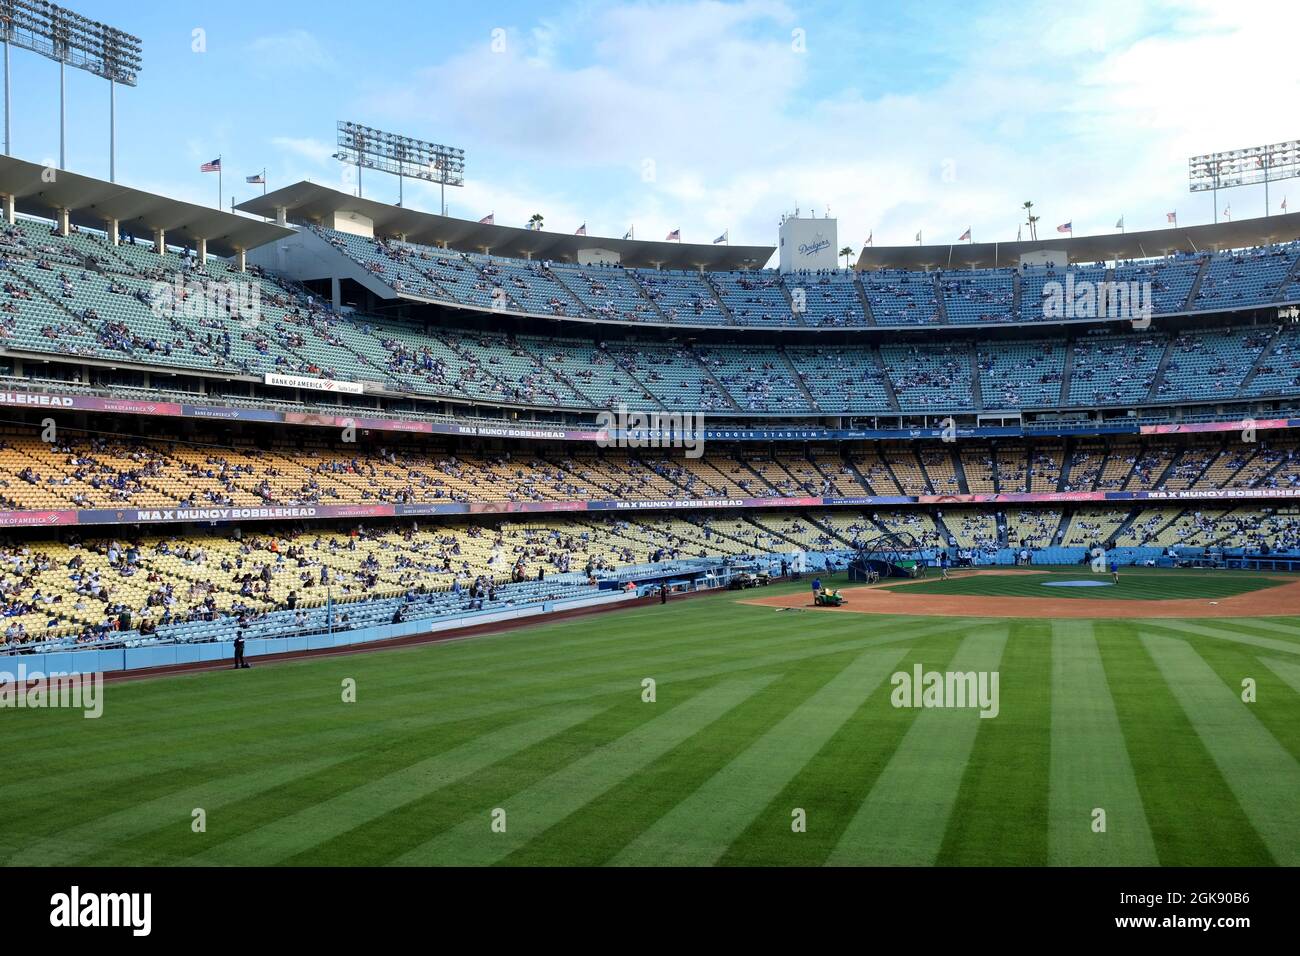 LOS ANGELES, CALIFORNIA, 29 GIUGNO 2021: Stadio Dodger. Home Plate e stand visti dal campo destro, mentre l'equipaggio del terreno si prepara per una partita. Foto Stock